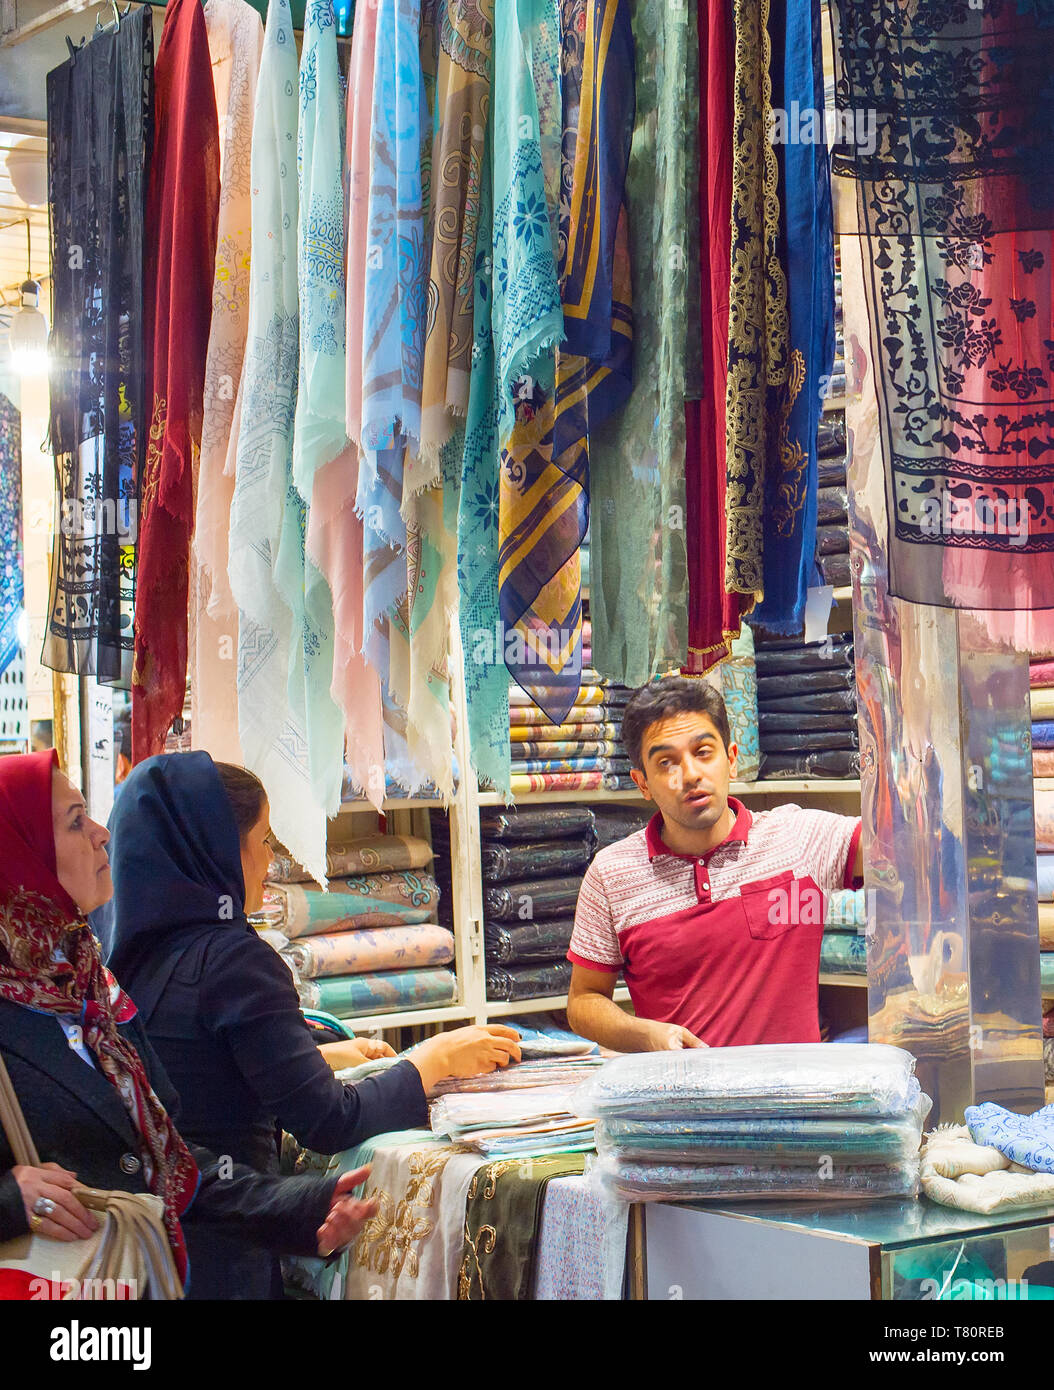 TEHRAN, IRAN - MAY 22, 2017: Woman bying at silk fabrics, textiles and colorful shawls at Grand Bazaar - main market in Tehran Stock Photo